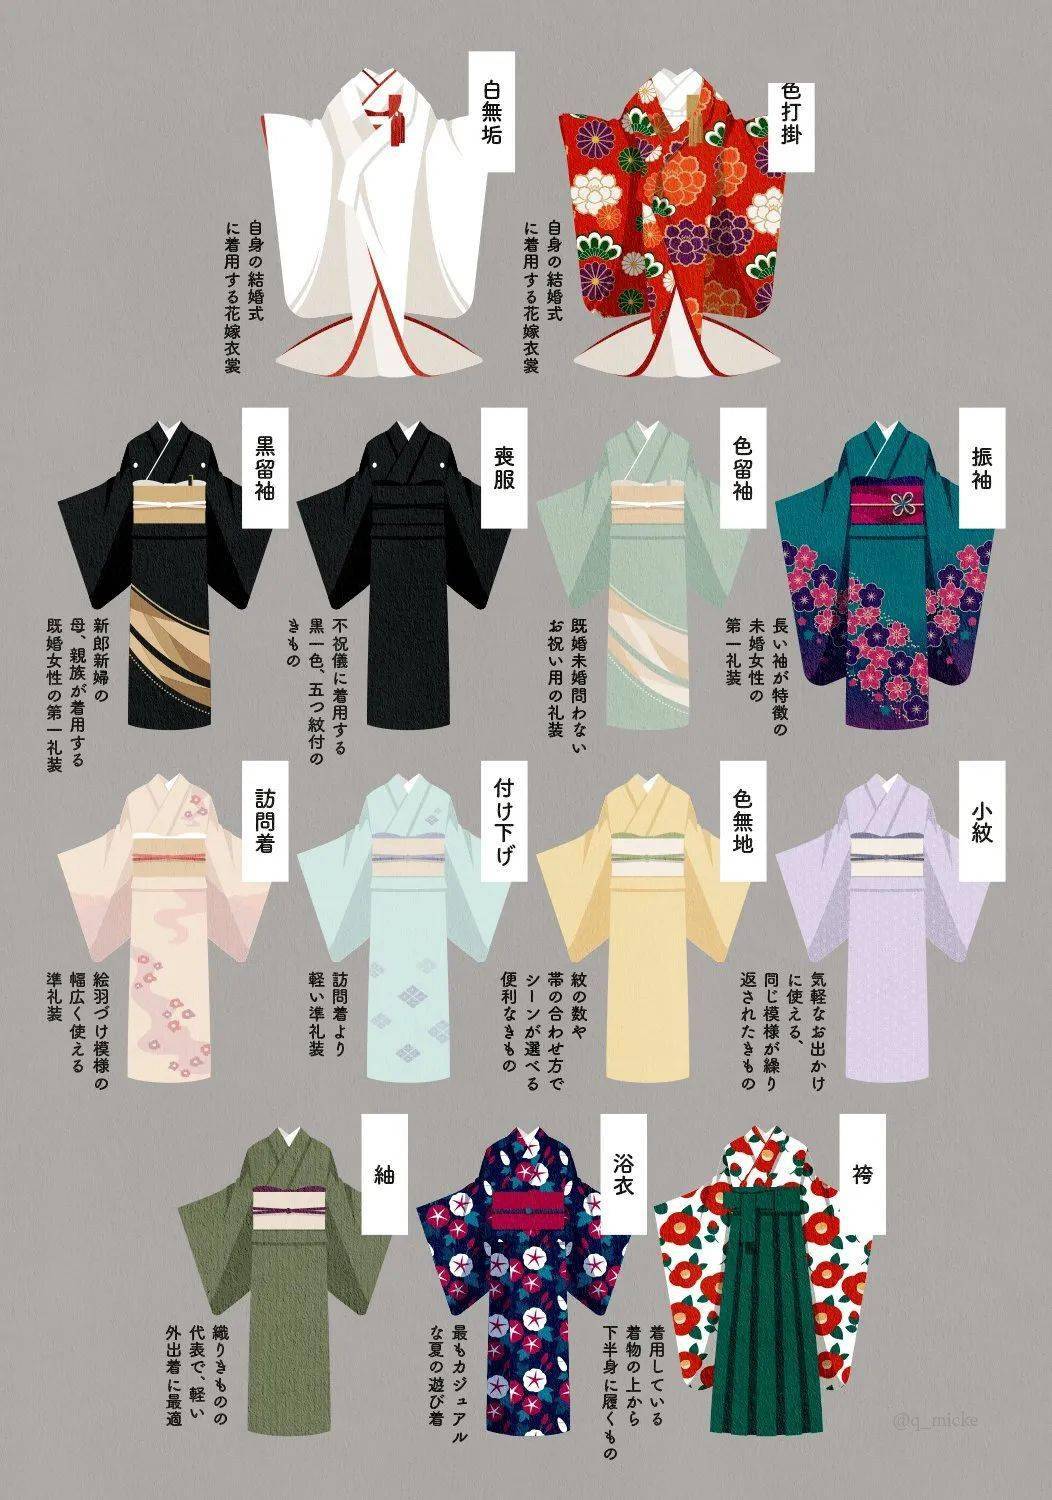 双赢彩票日本的“和服”有哪些种类看完这张图就知道啦！(图1)